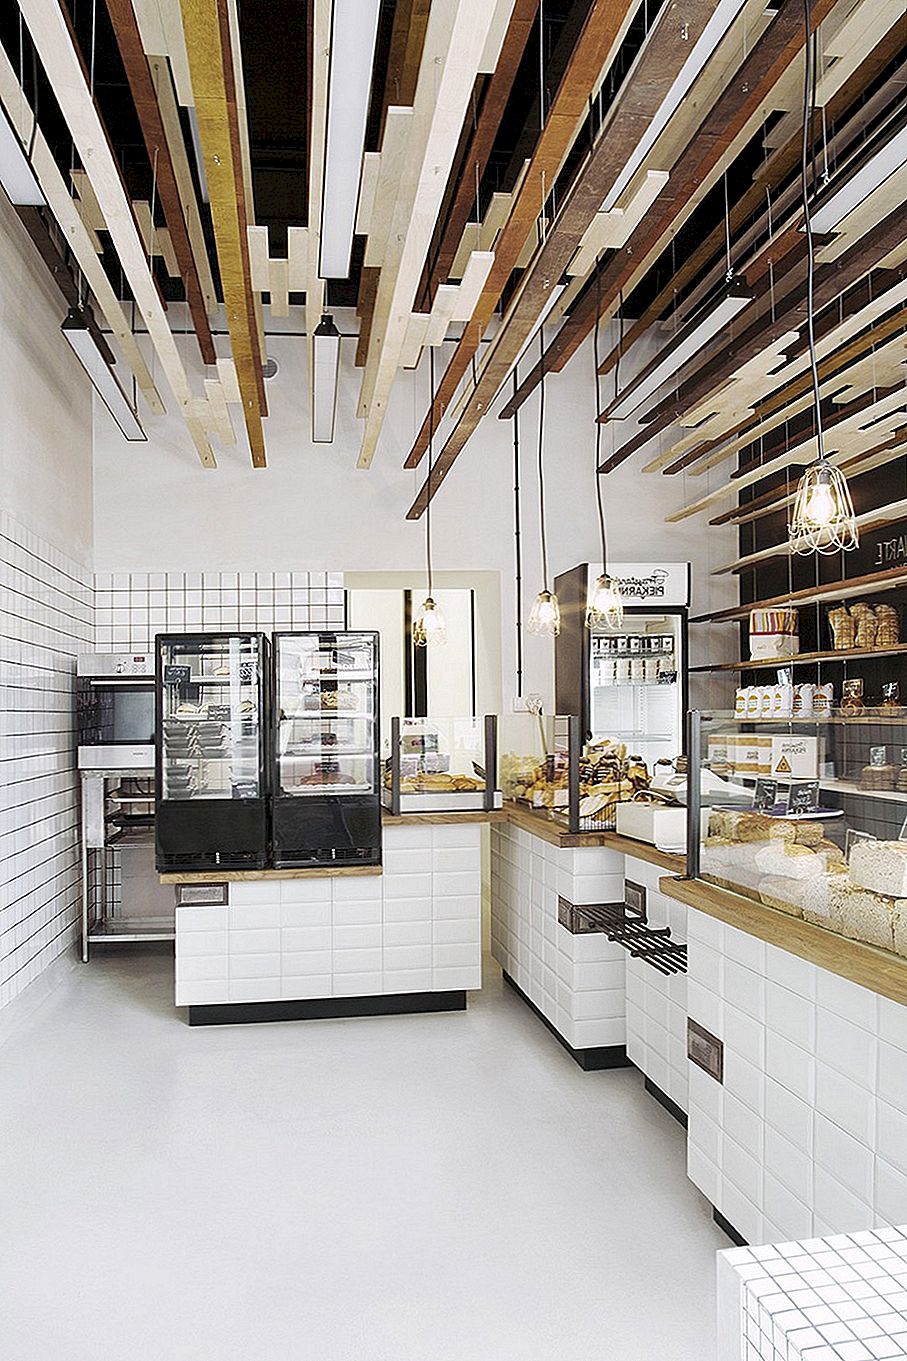 เชิญเข้าร่วมการออกแบบ Bakery ในวอร์ซอพร้อมติดตั้งไม้อัดจับตา